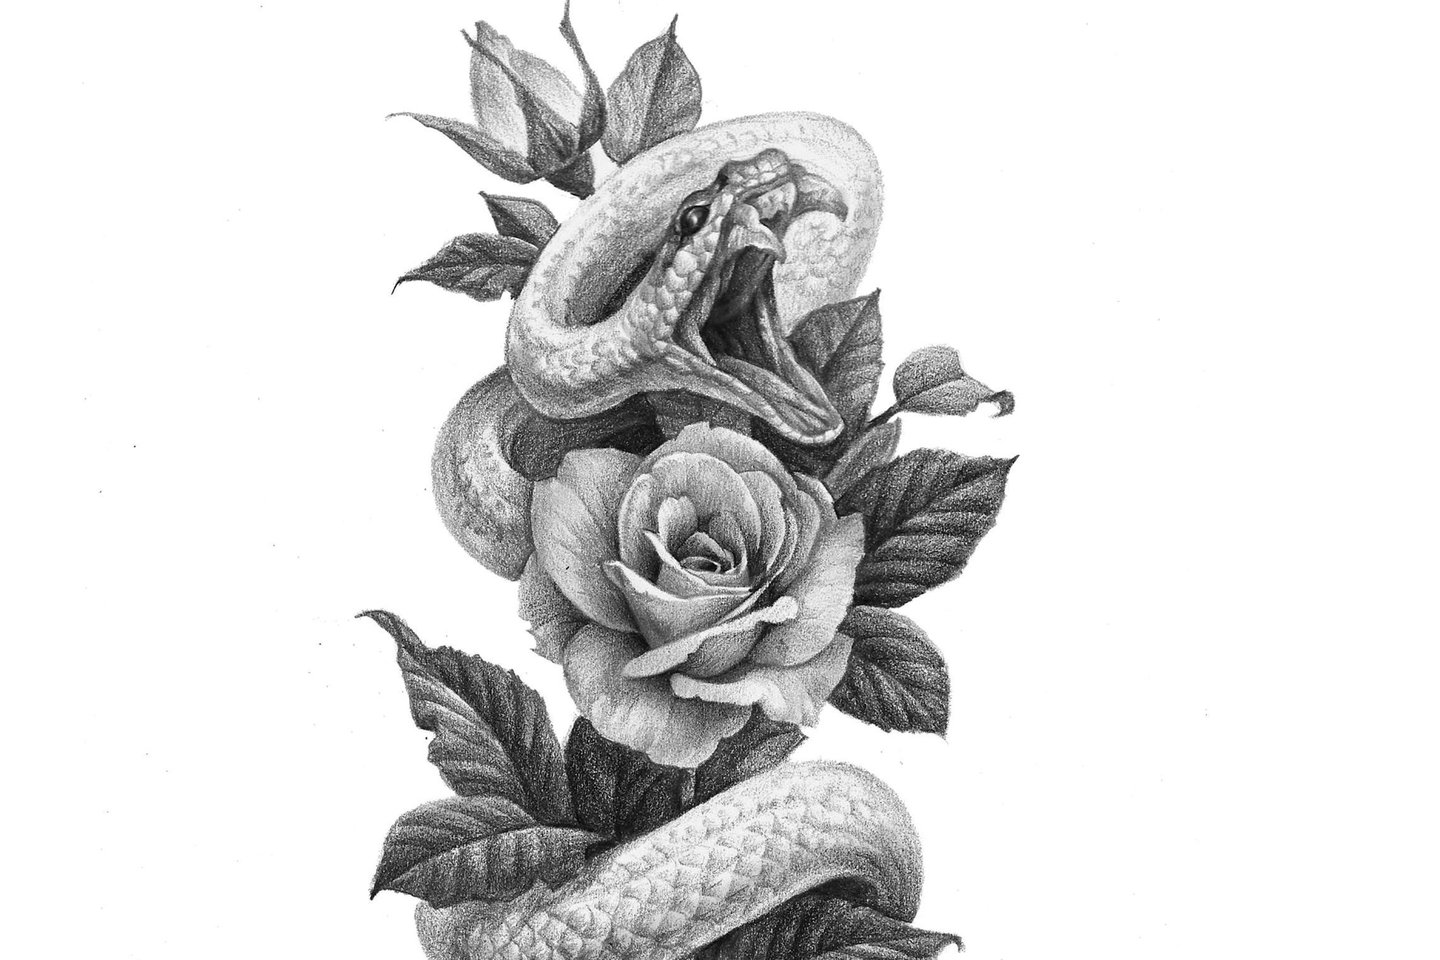 О татуировке змей